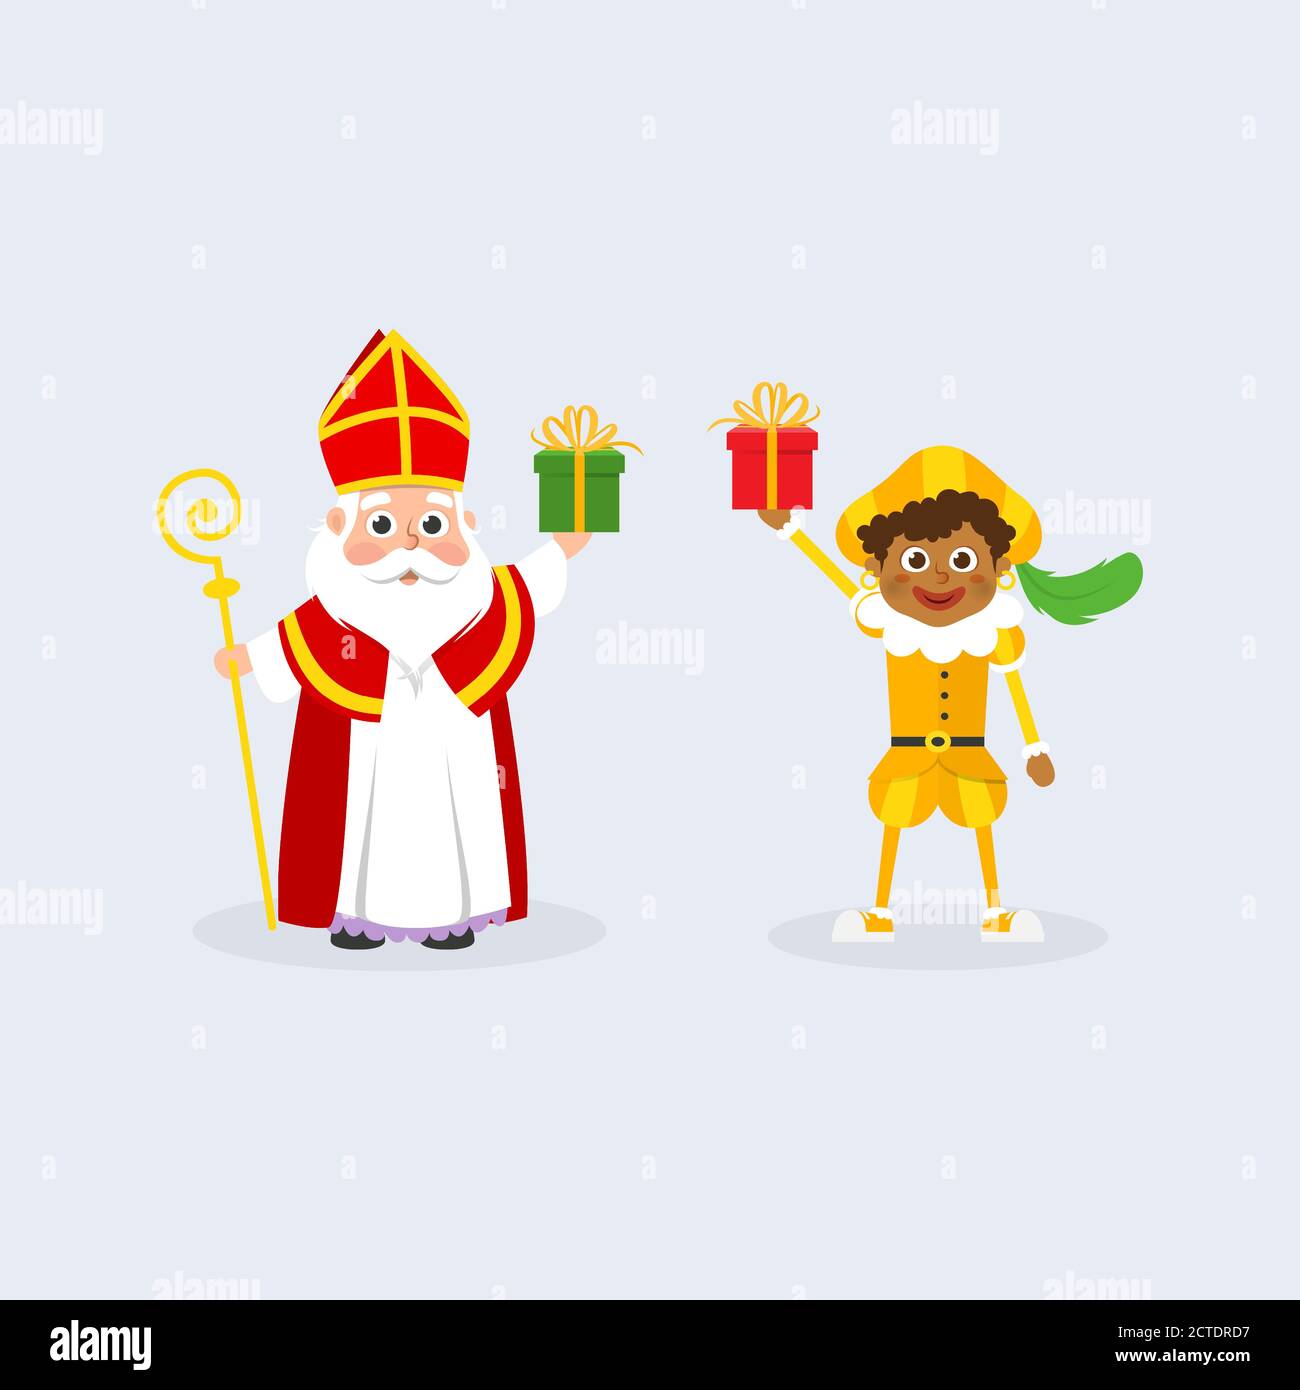 Sinterklaas ou Saint Nicolas et enfant avec des cadeaux célèbrent les vacances - caractères traditionnels néerlandais Illustration de Vecteur